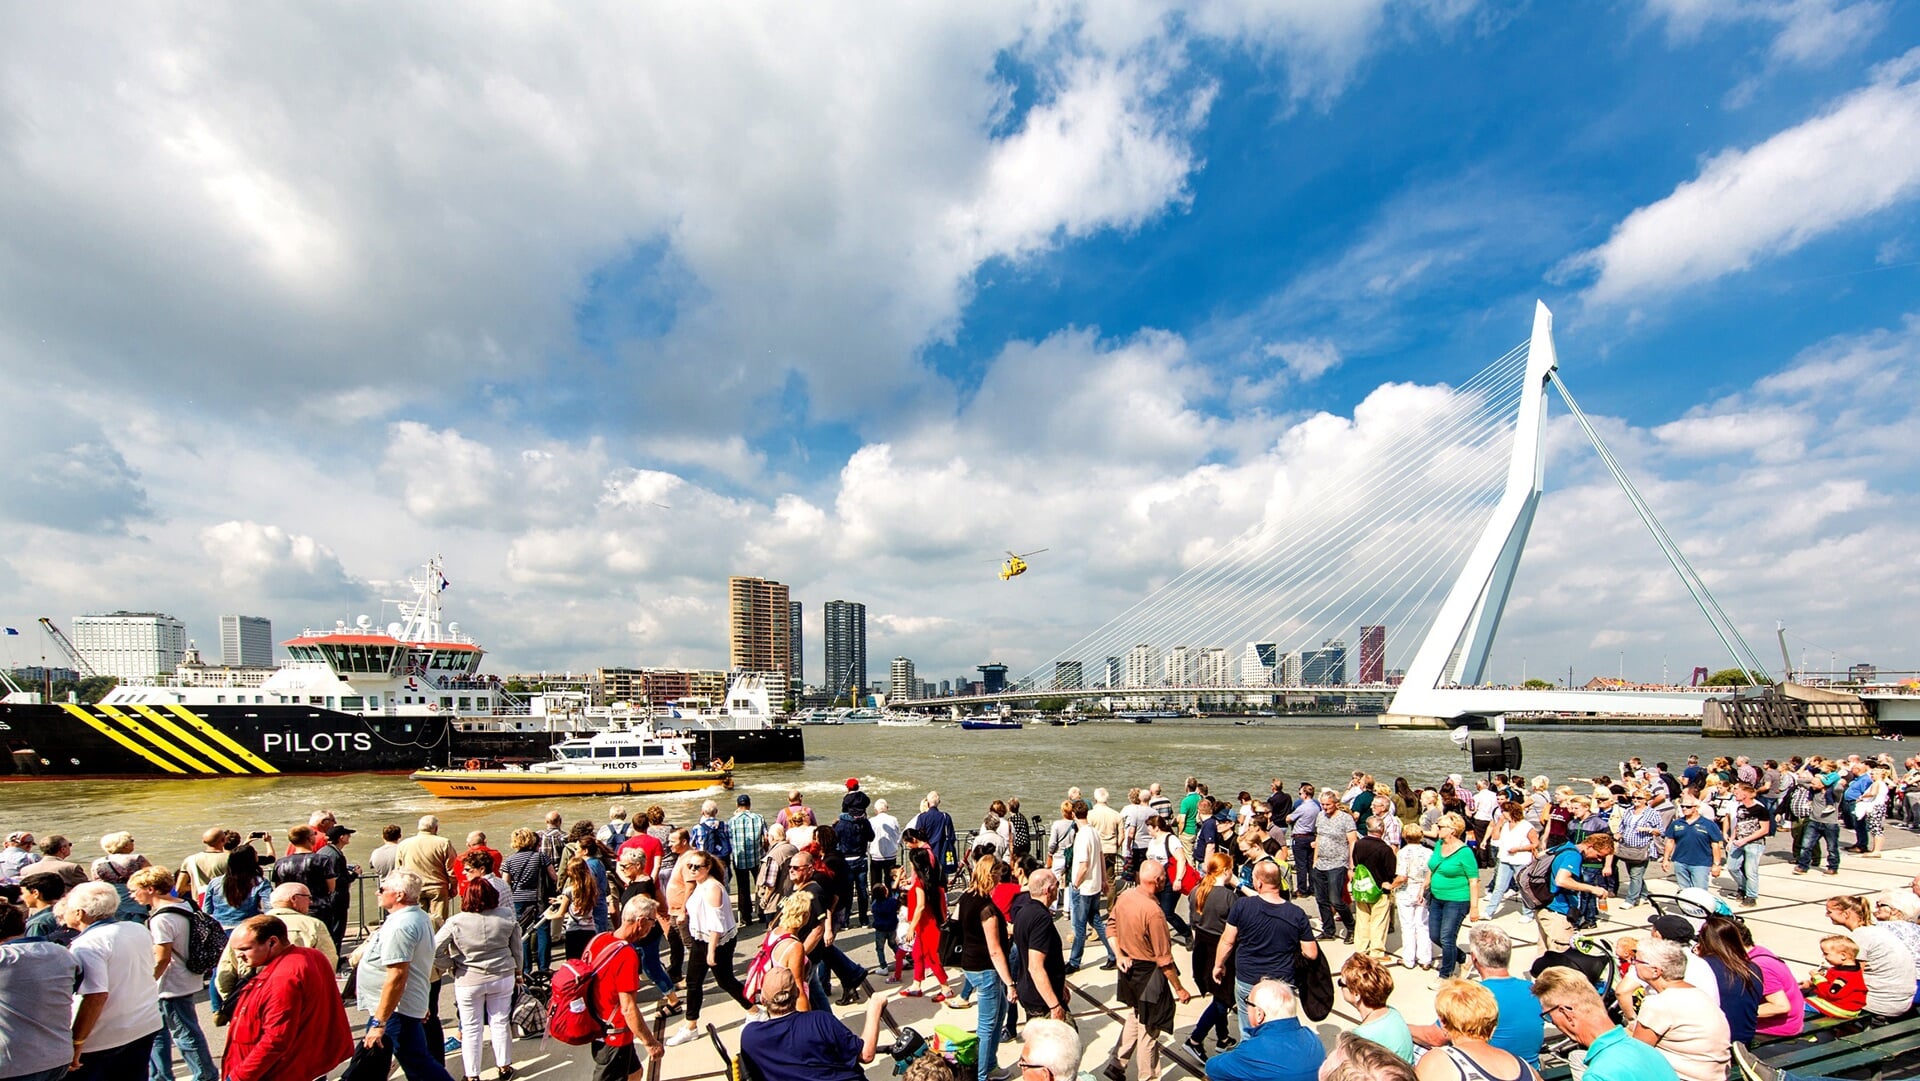 De haven verhuist steeds meer naar het westen en verdwijnt uit het zicht van de Rotterdammer, terwijl de haven voor de stad zeer relevant blijft. Foto: Anne Reitsma